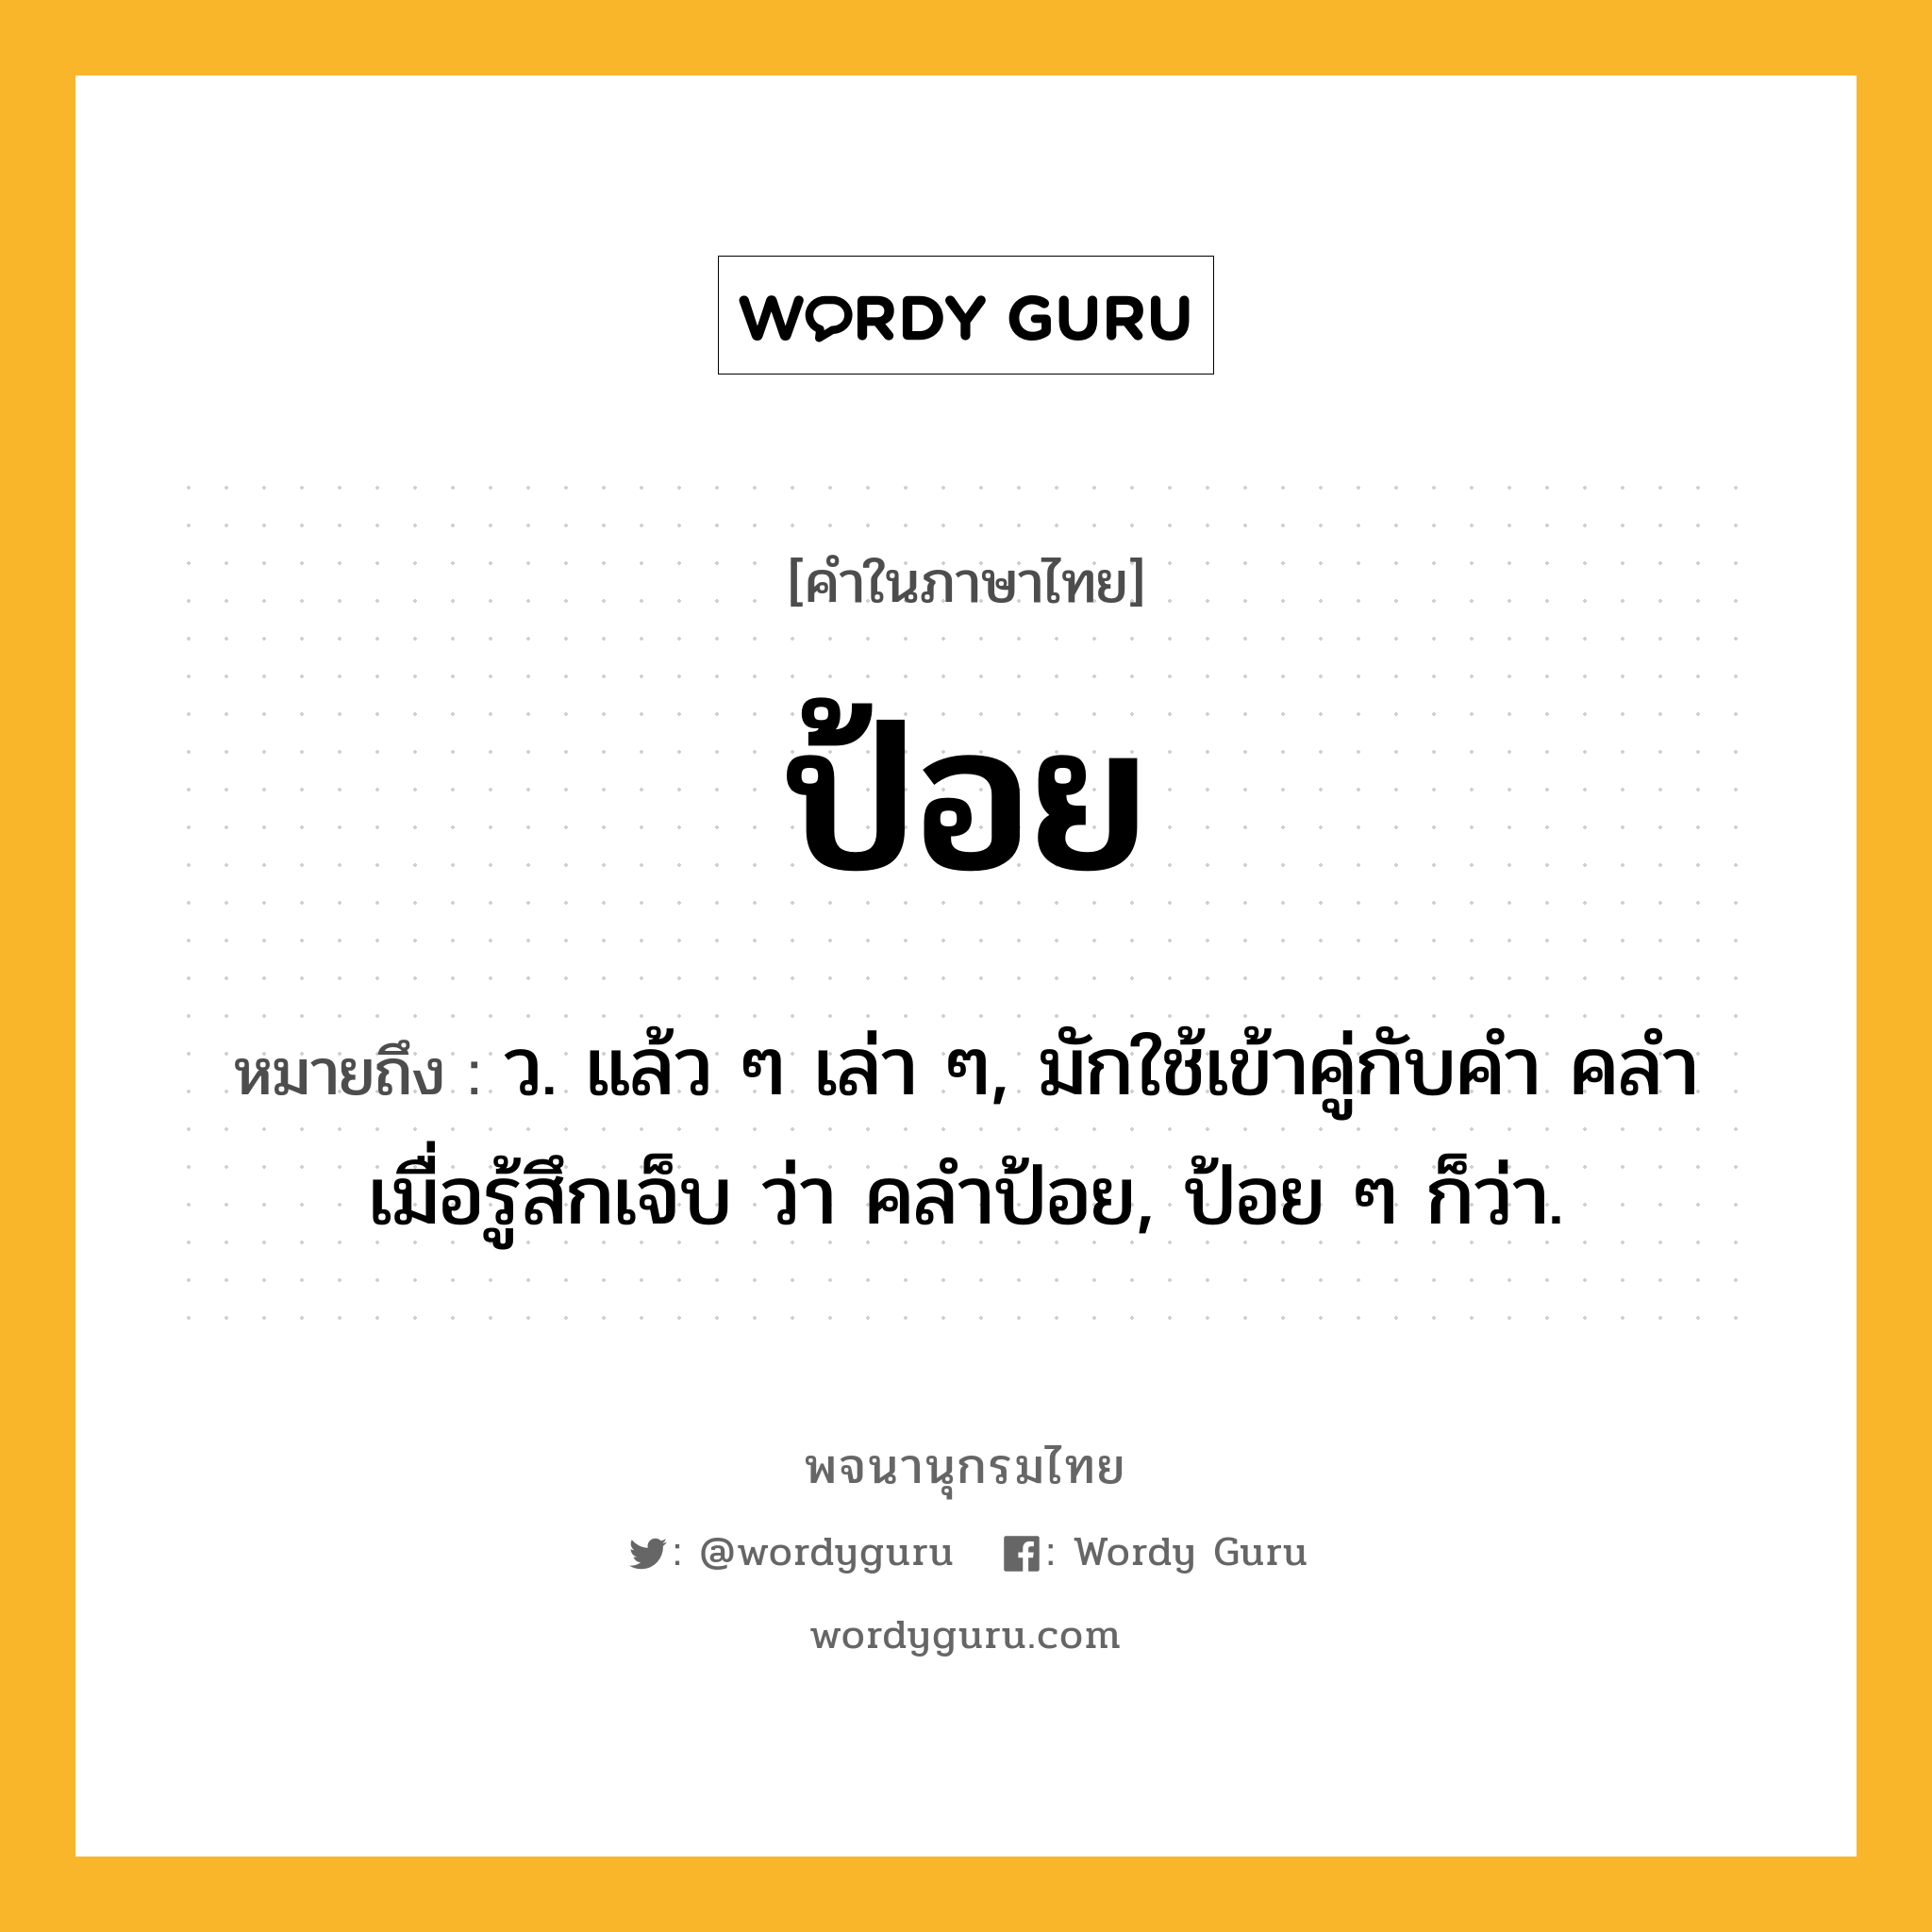 ป้อย ความหมาย หมายถึงอะไร?, คำในภาษาไทย ป้อย หมายถึง ว. แล้ว ๆ เล่า ๆ, มักใช้เข้าคู่กับคำ คลํา เมื่อรู้สึกเจ็บ ว่า คลําป้อย, ป้อย ๆ ก็ว่า.